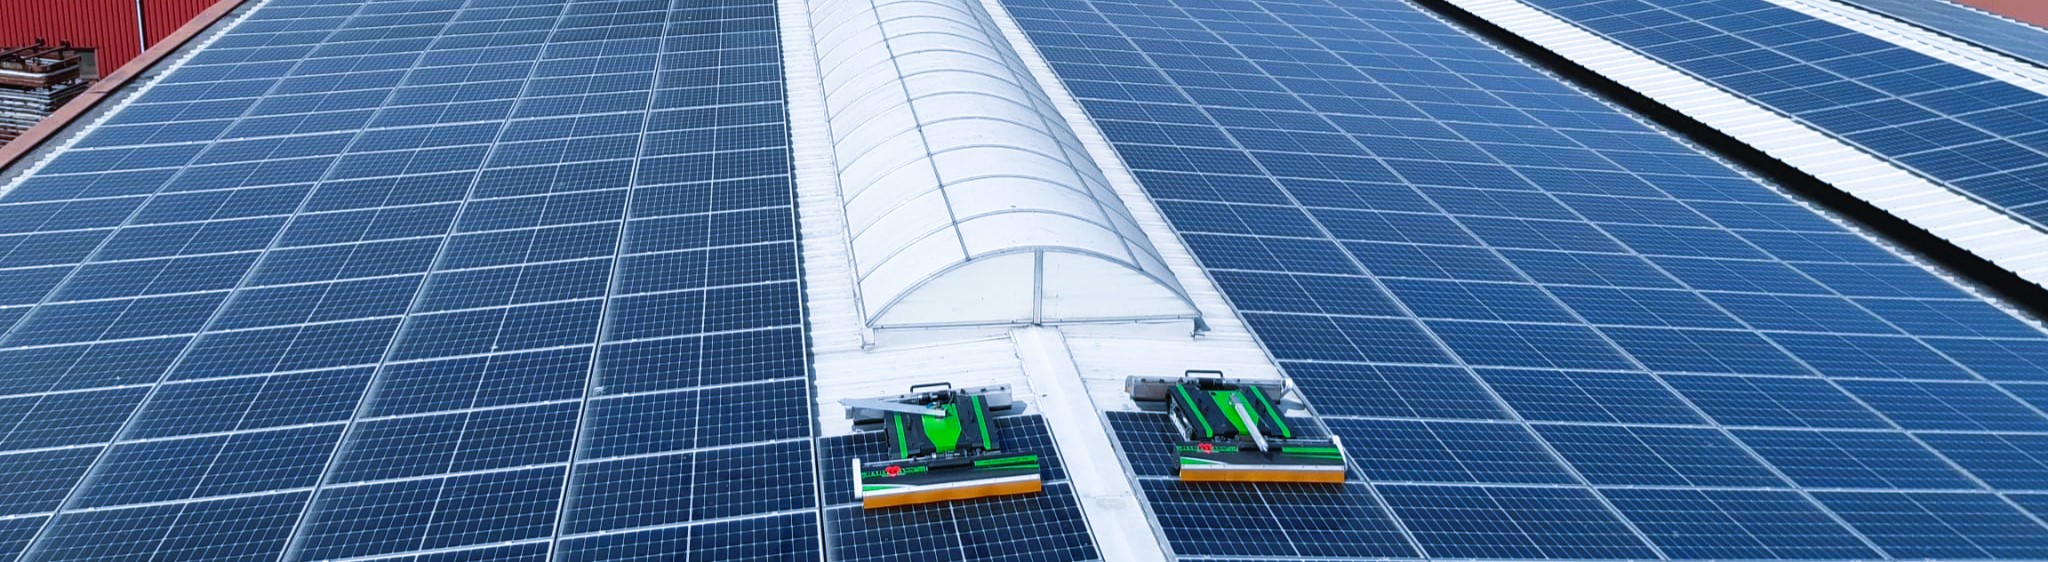 schoonmaak zonnepanelen staldak met 2 robots